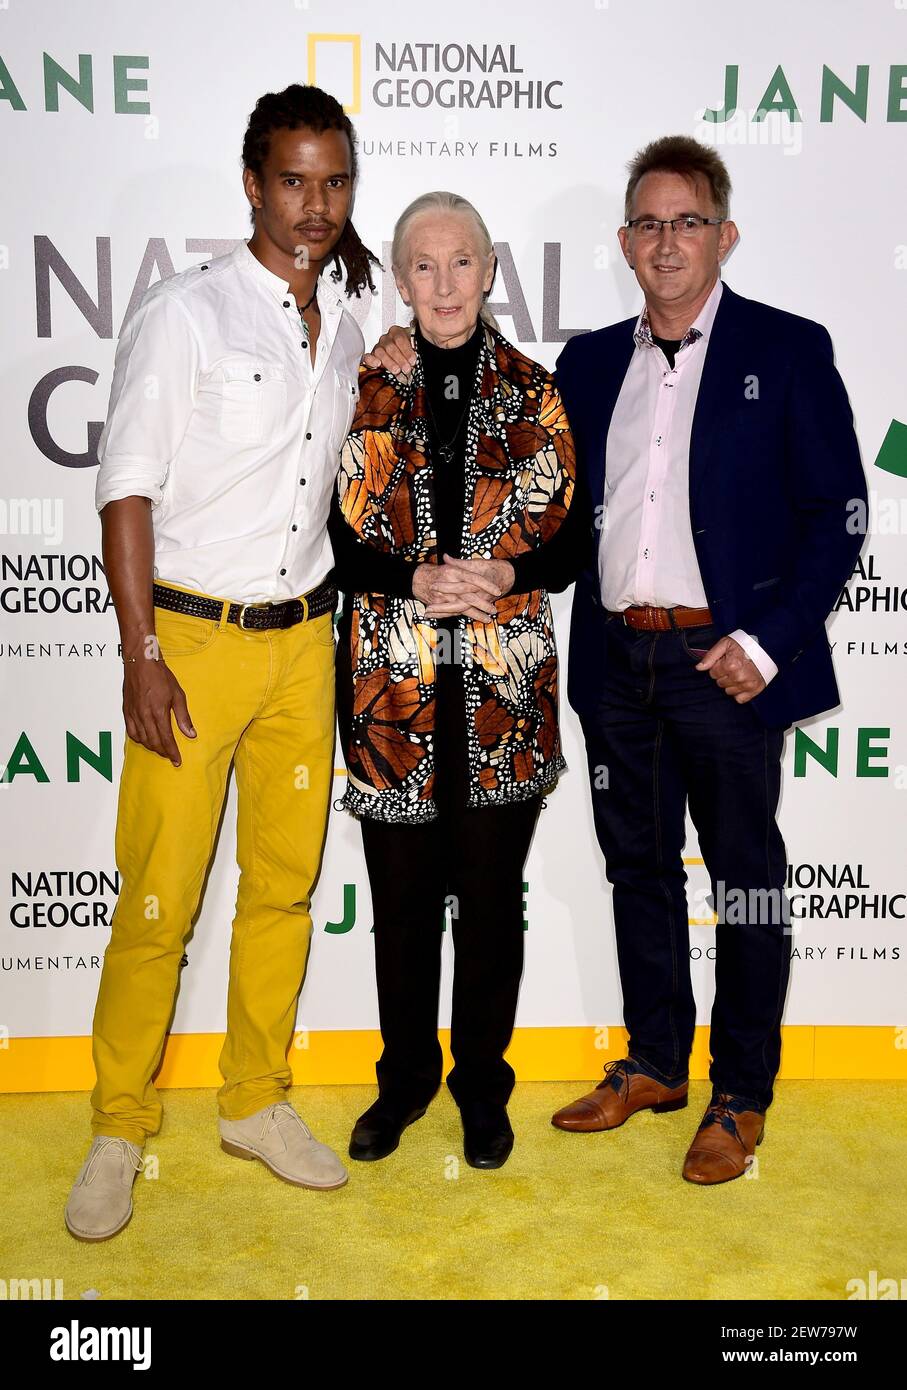 HOLLYWOOD - OKTOBER 9: (L-R) Merlin van Lawick, Dr. Jane Goodall und Grub  van Lawick besuchen die Los Angeles Premiere von National Geographic  Documentary Films 'Jane' am 9. Oktober 2017 in Hollywood,